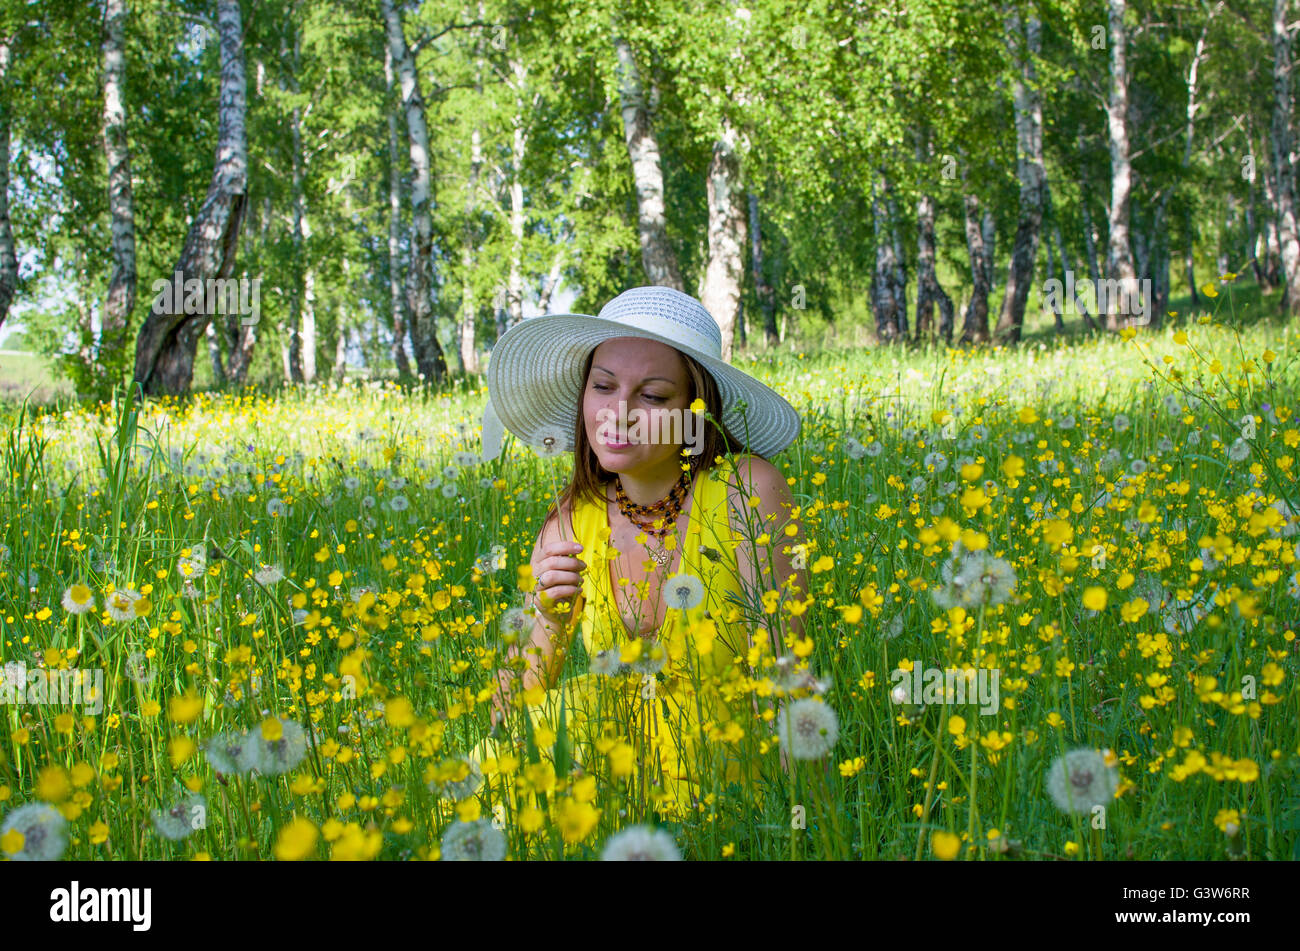 La jeune fille dans un chapeau sur une prairie entre les fleurs jaunes et les pissenlits, la jeune fille, sur un pré, le bois, le jaune, les fleurs, les jeunes Banque D'Images